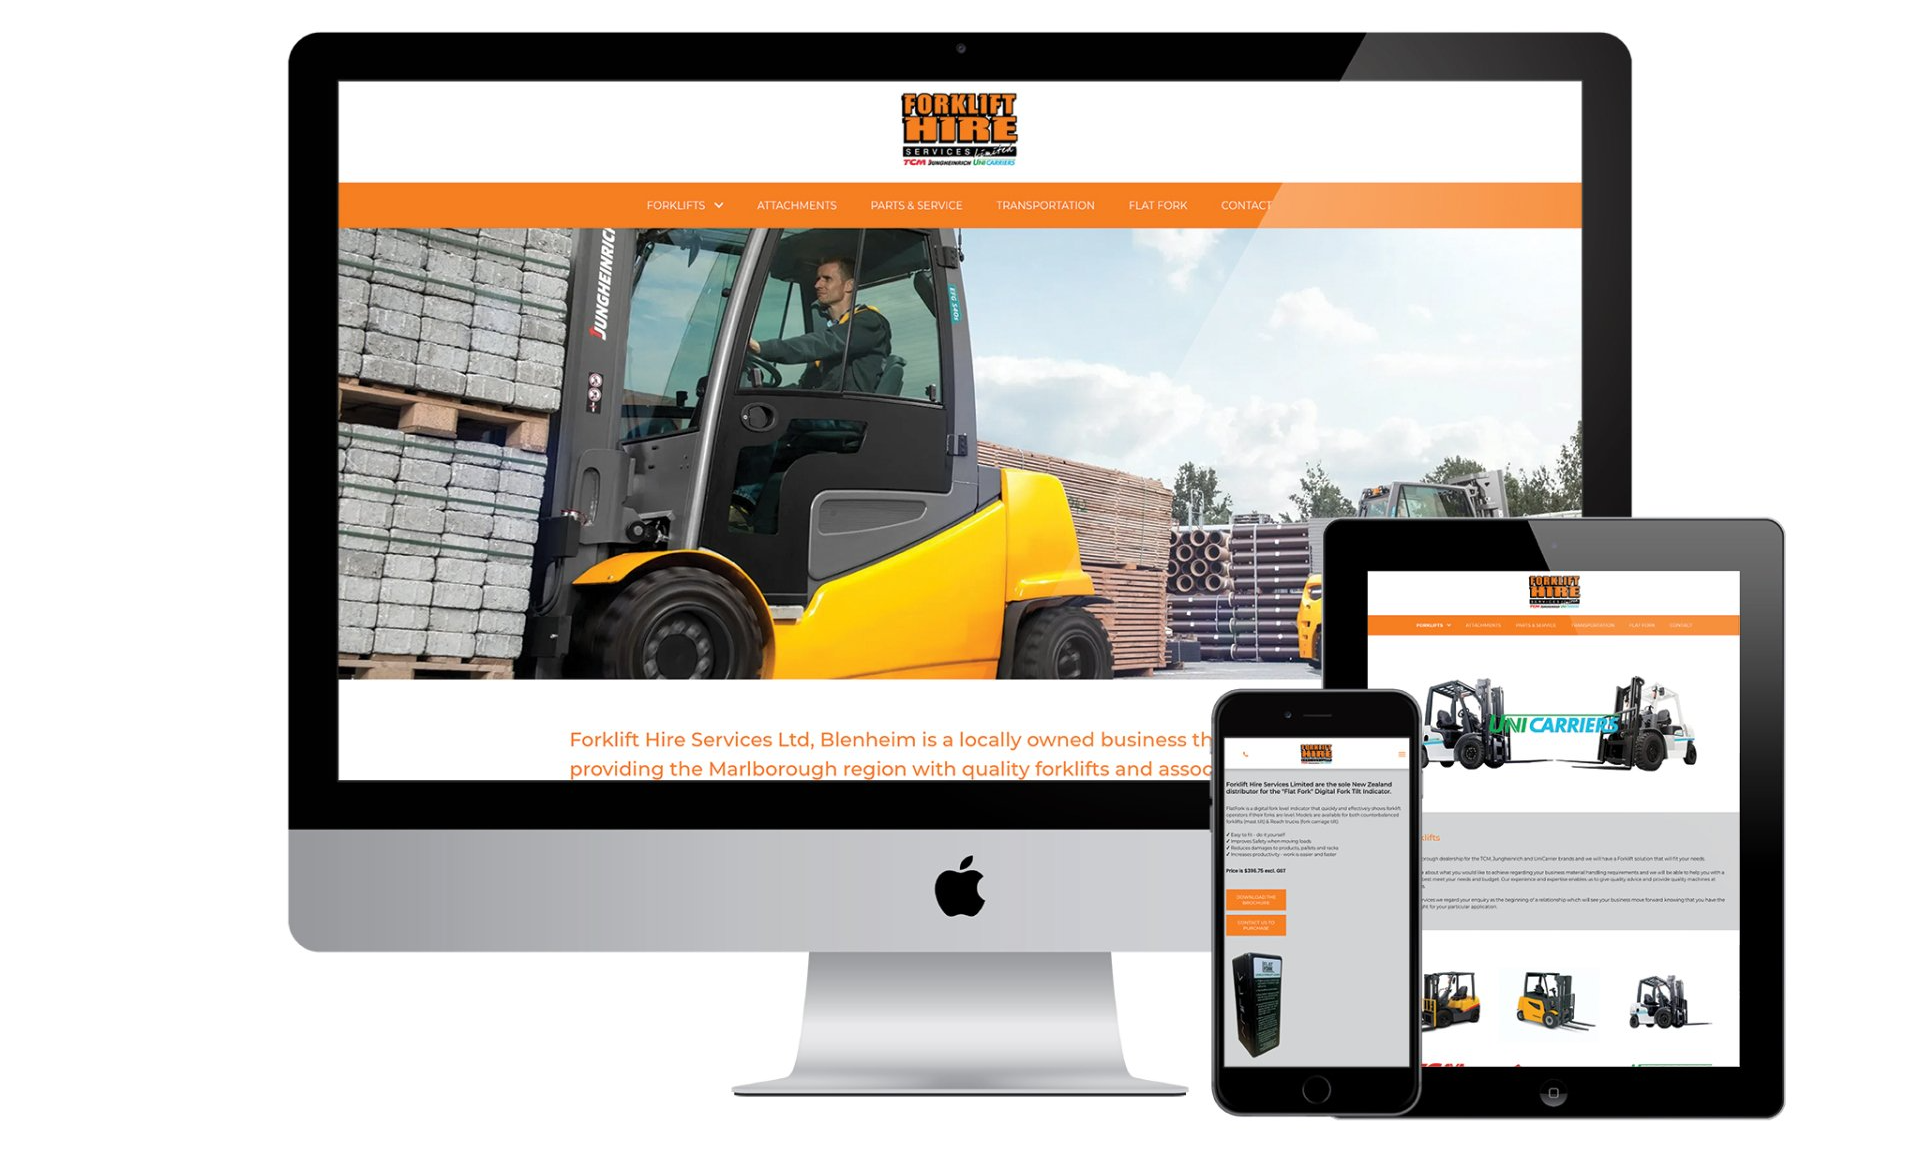 Forklift Hire Services website designed by Vanilla Hayes creative graphic design  studio in Blenheim, Marlborough, New Zealand